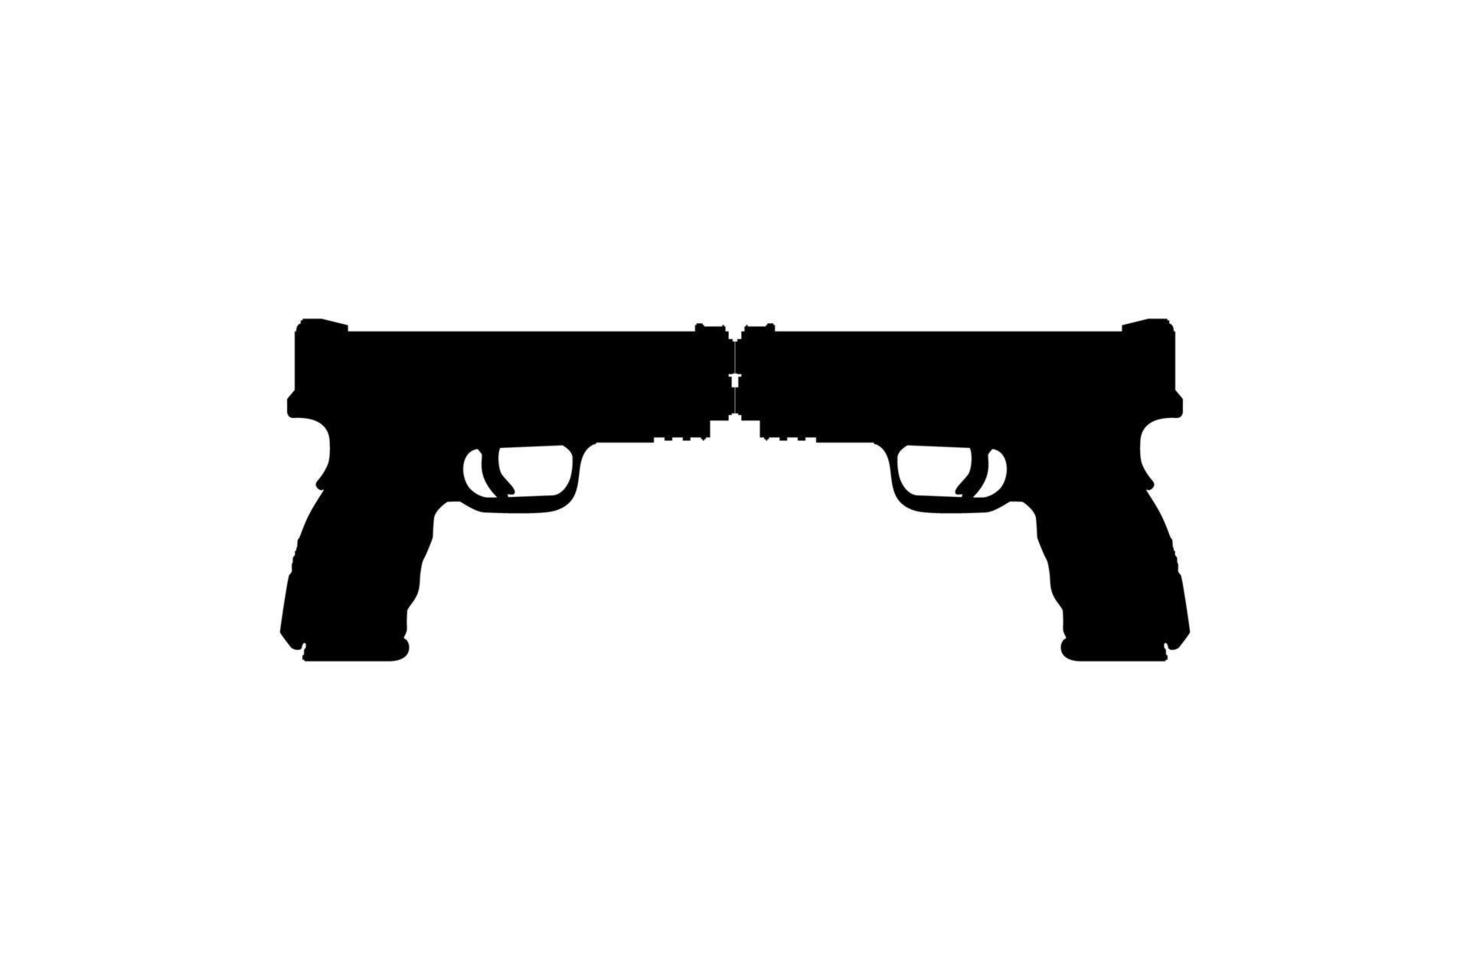 Silhouette der Pistole für Logo, Piktogramm, Website oder Grafikdesignelement. Vektor-Illustration vektor